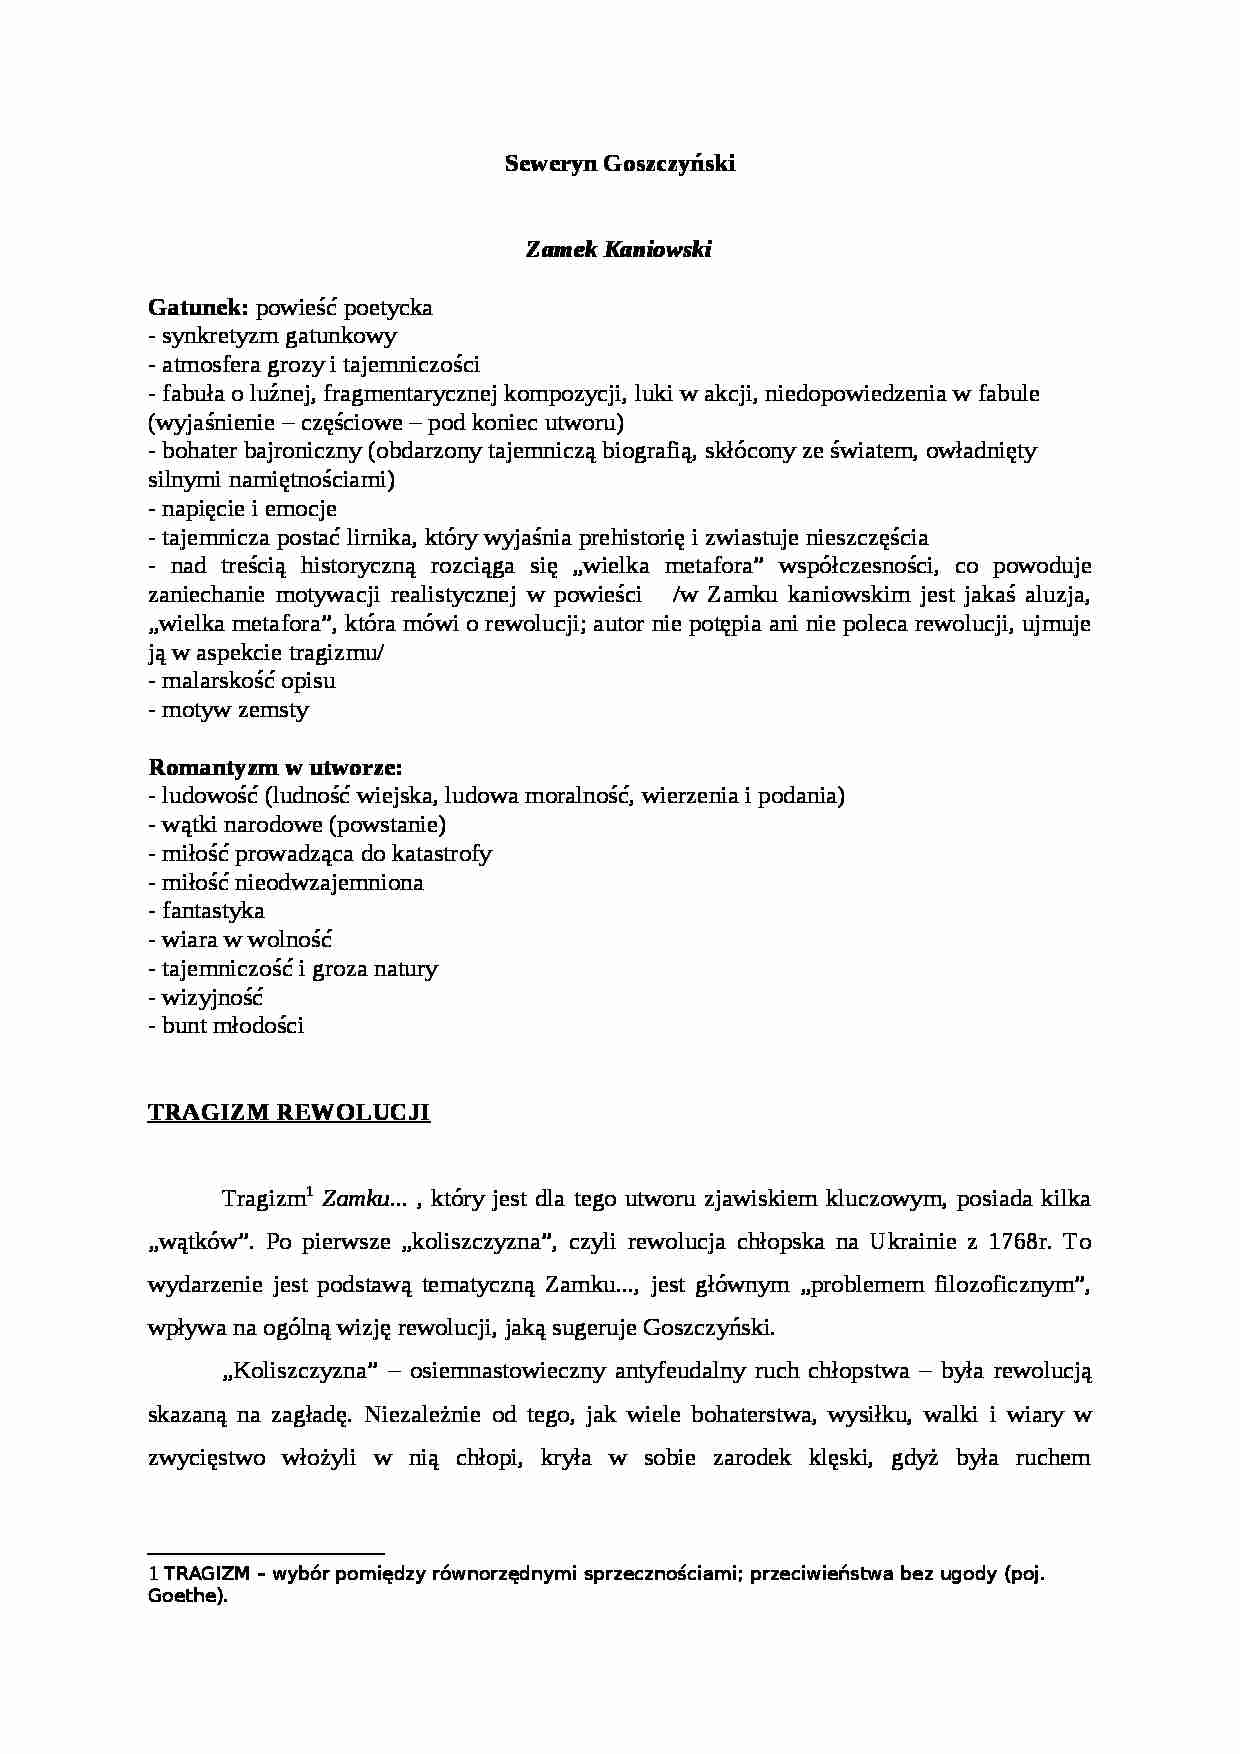 Seweryn Goszczyński - życiorys - strona 1